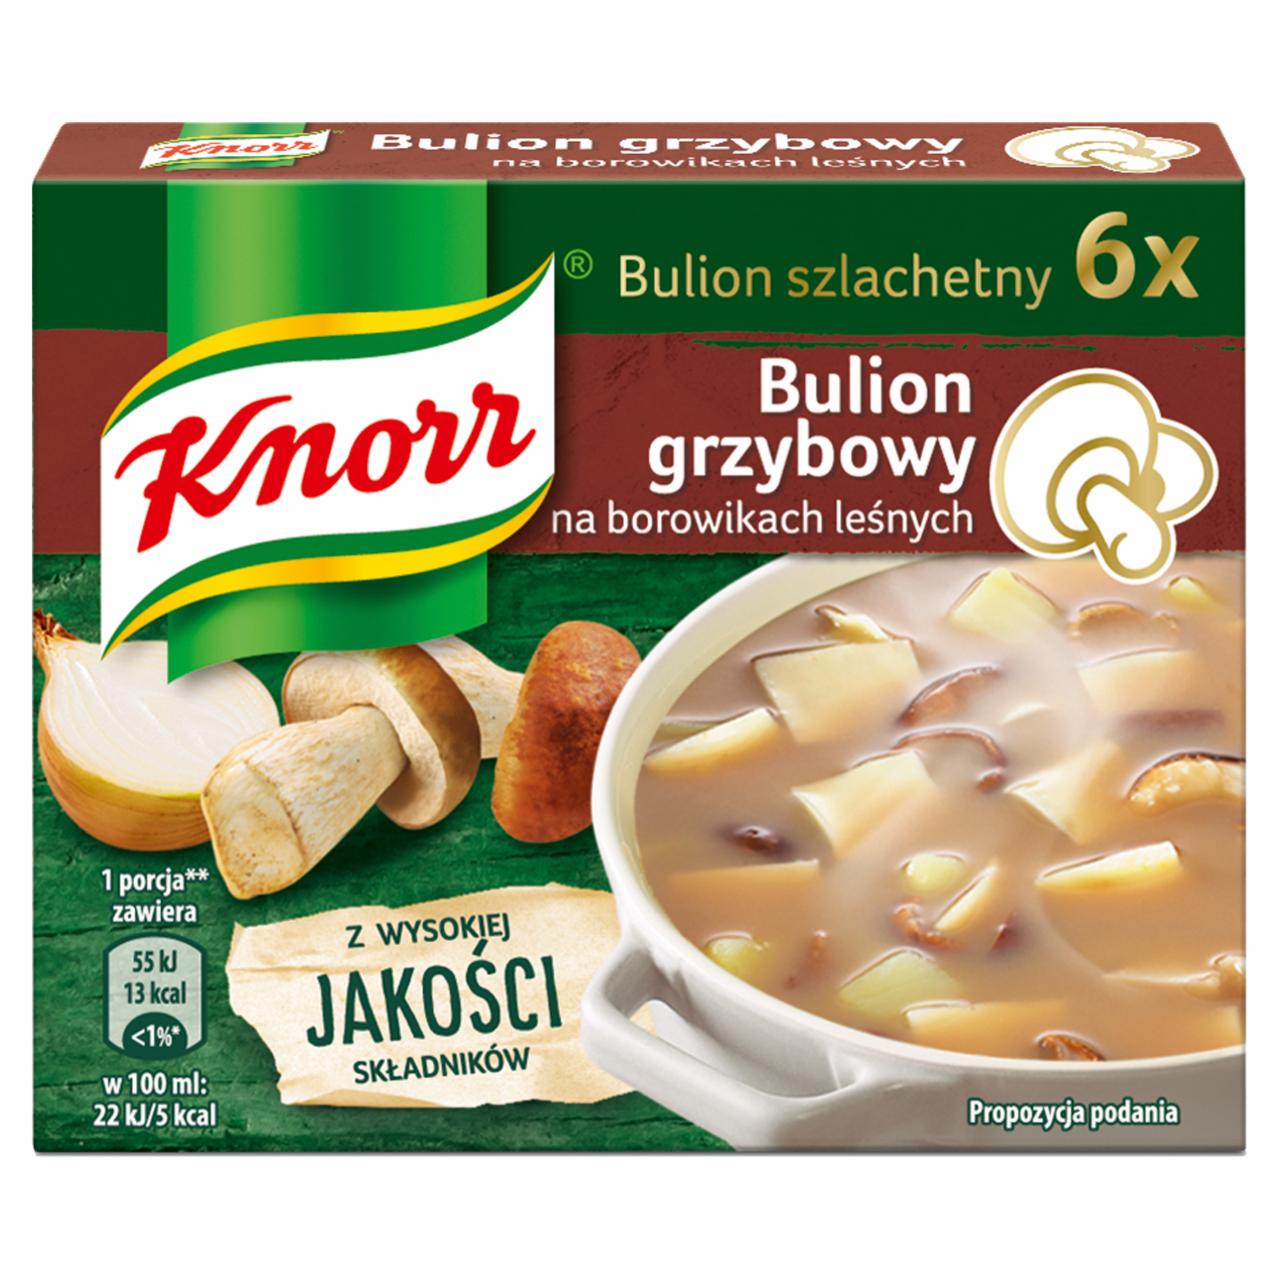 Zdjęcia - Knorr Bulion szlachetny grzybowy z borowikami 60 g (6 x 10 g)